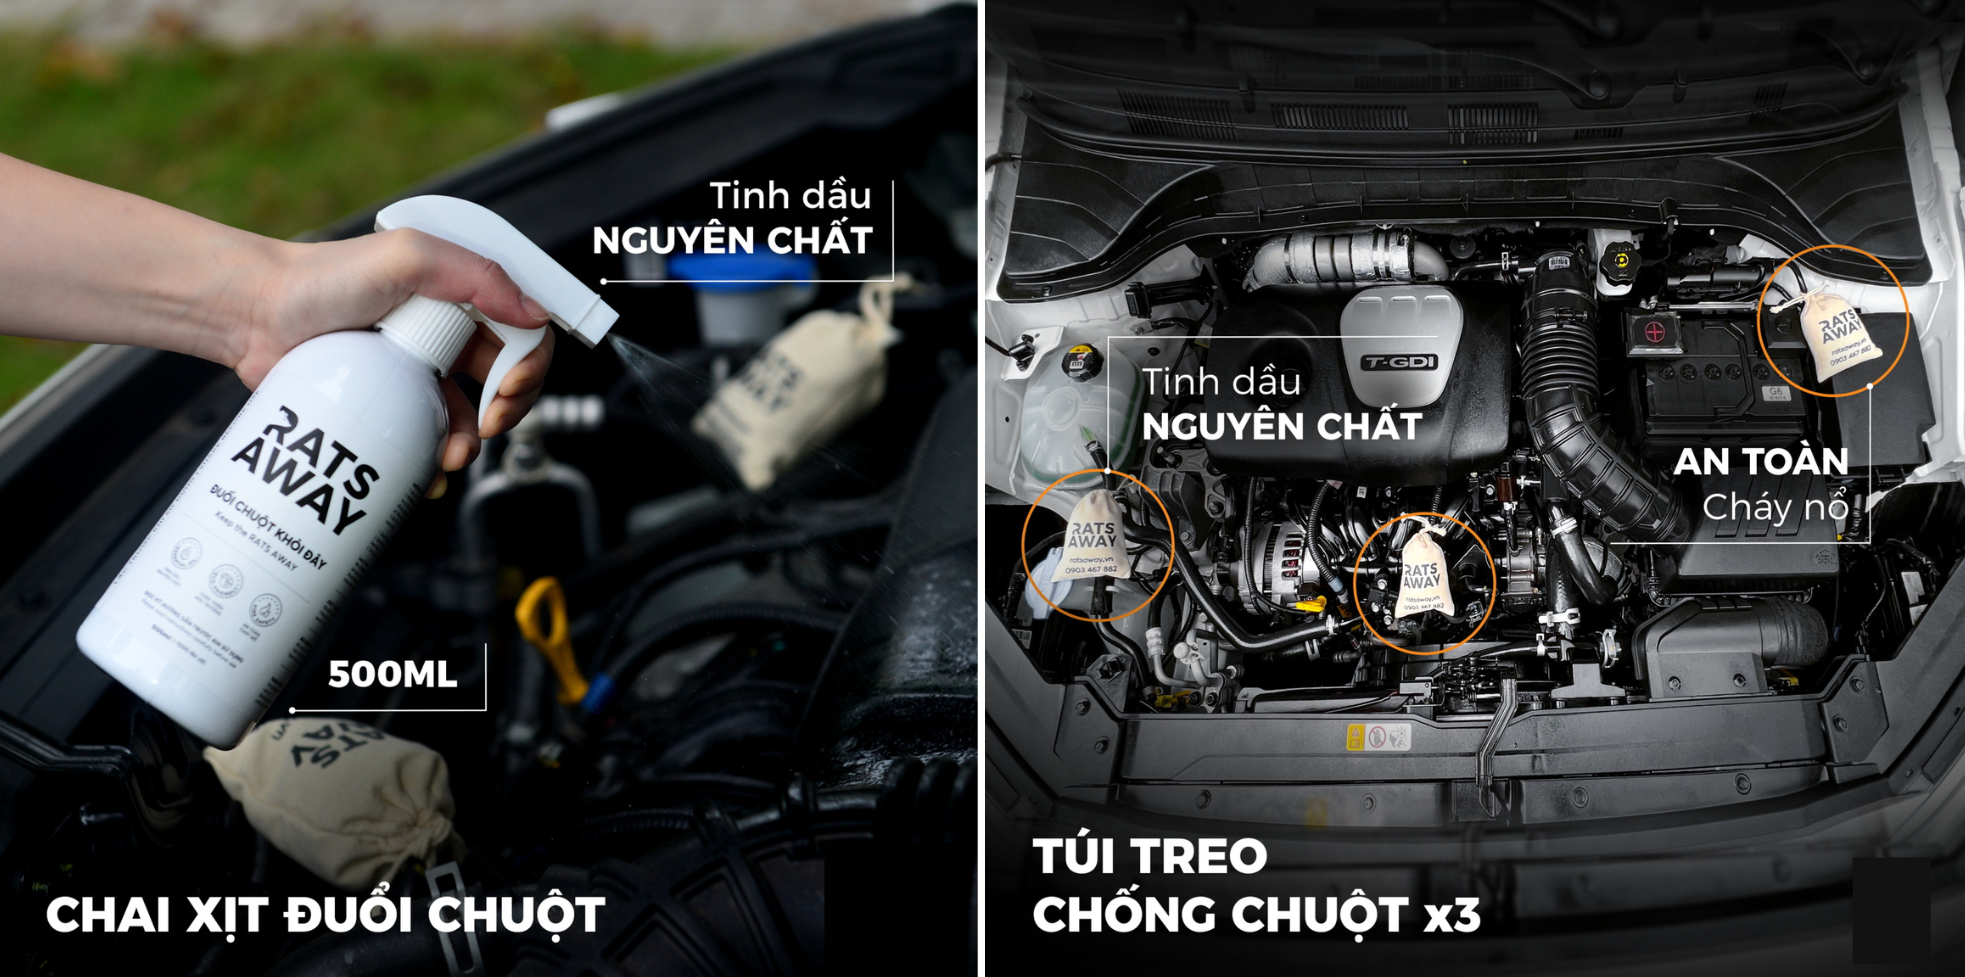 Rats Away - Sản phẩm chống chuột chuyên dụng của Việt Nam cho ô tô đã thử nghiệm trên 100 xe với hiệu quả tới 96% - Ảnh 3.